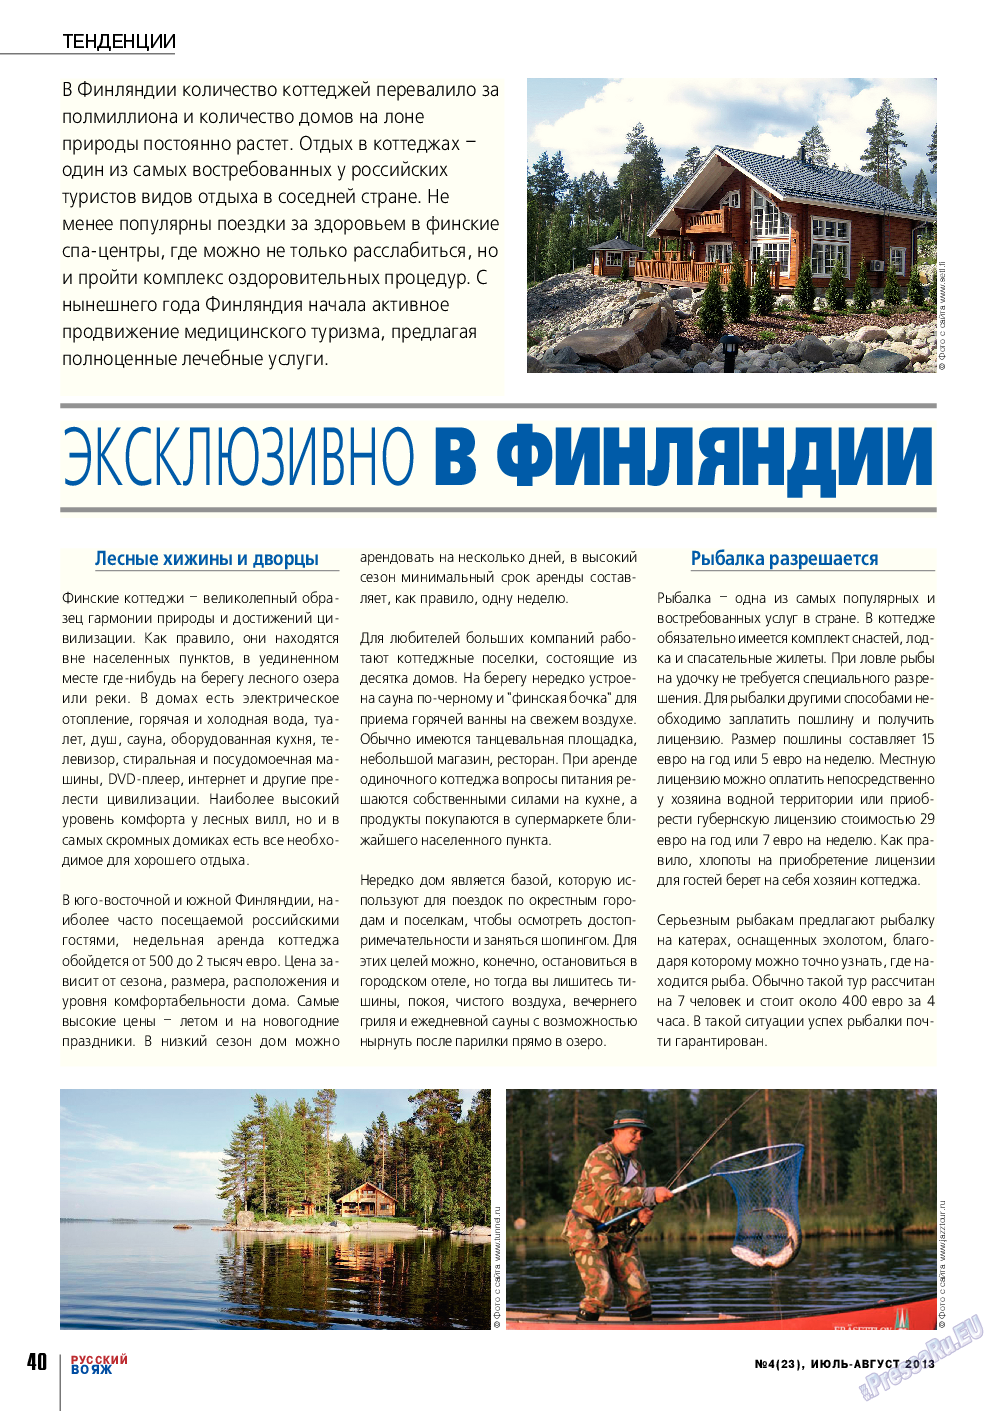 Русский вояж (журнал). 2013 год, номер 23, стр. 40